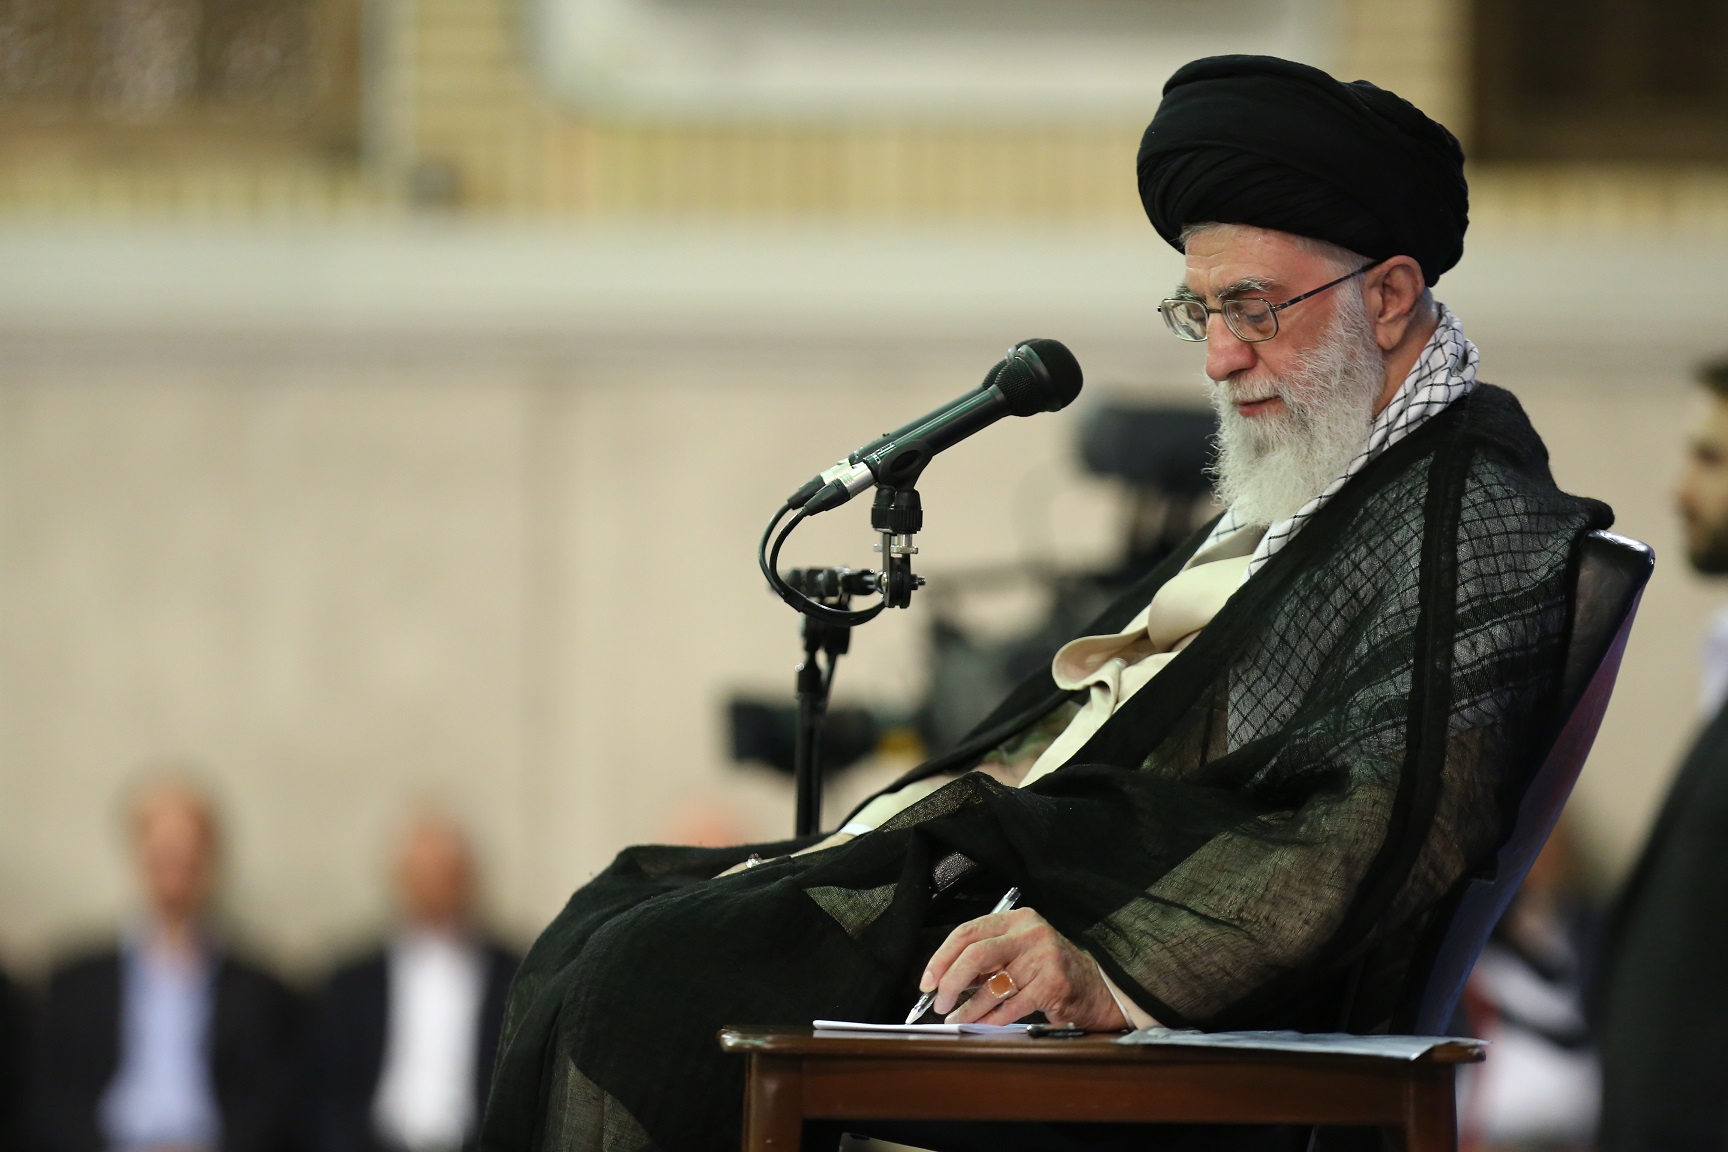 قائد الثورة الاسلامية